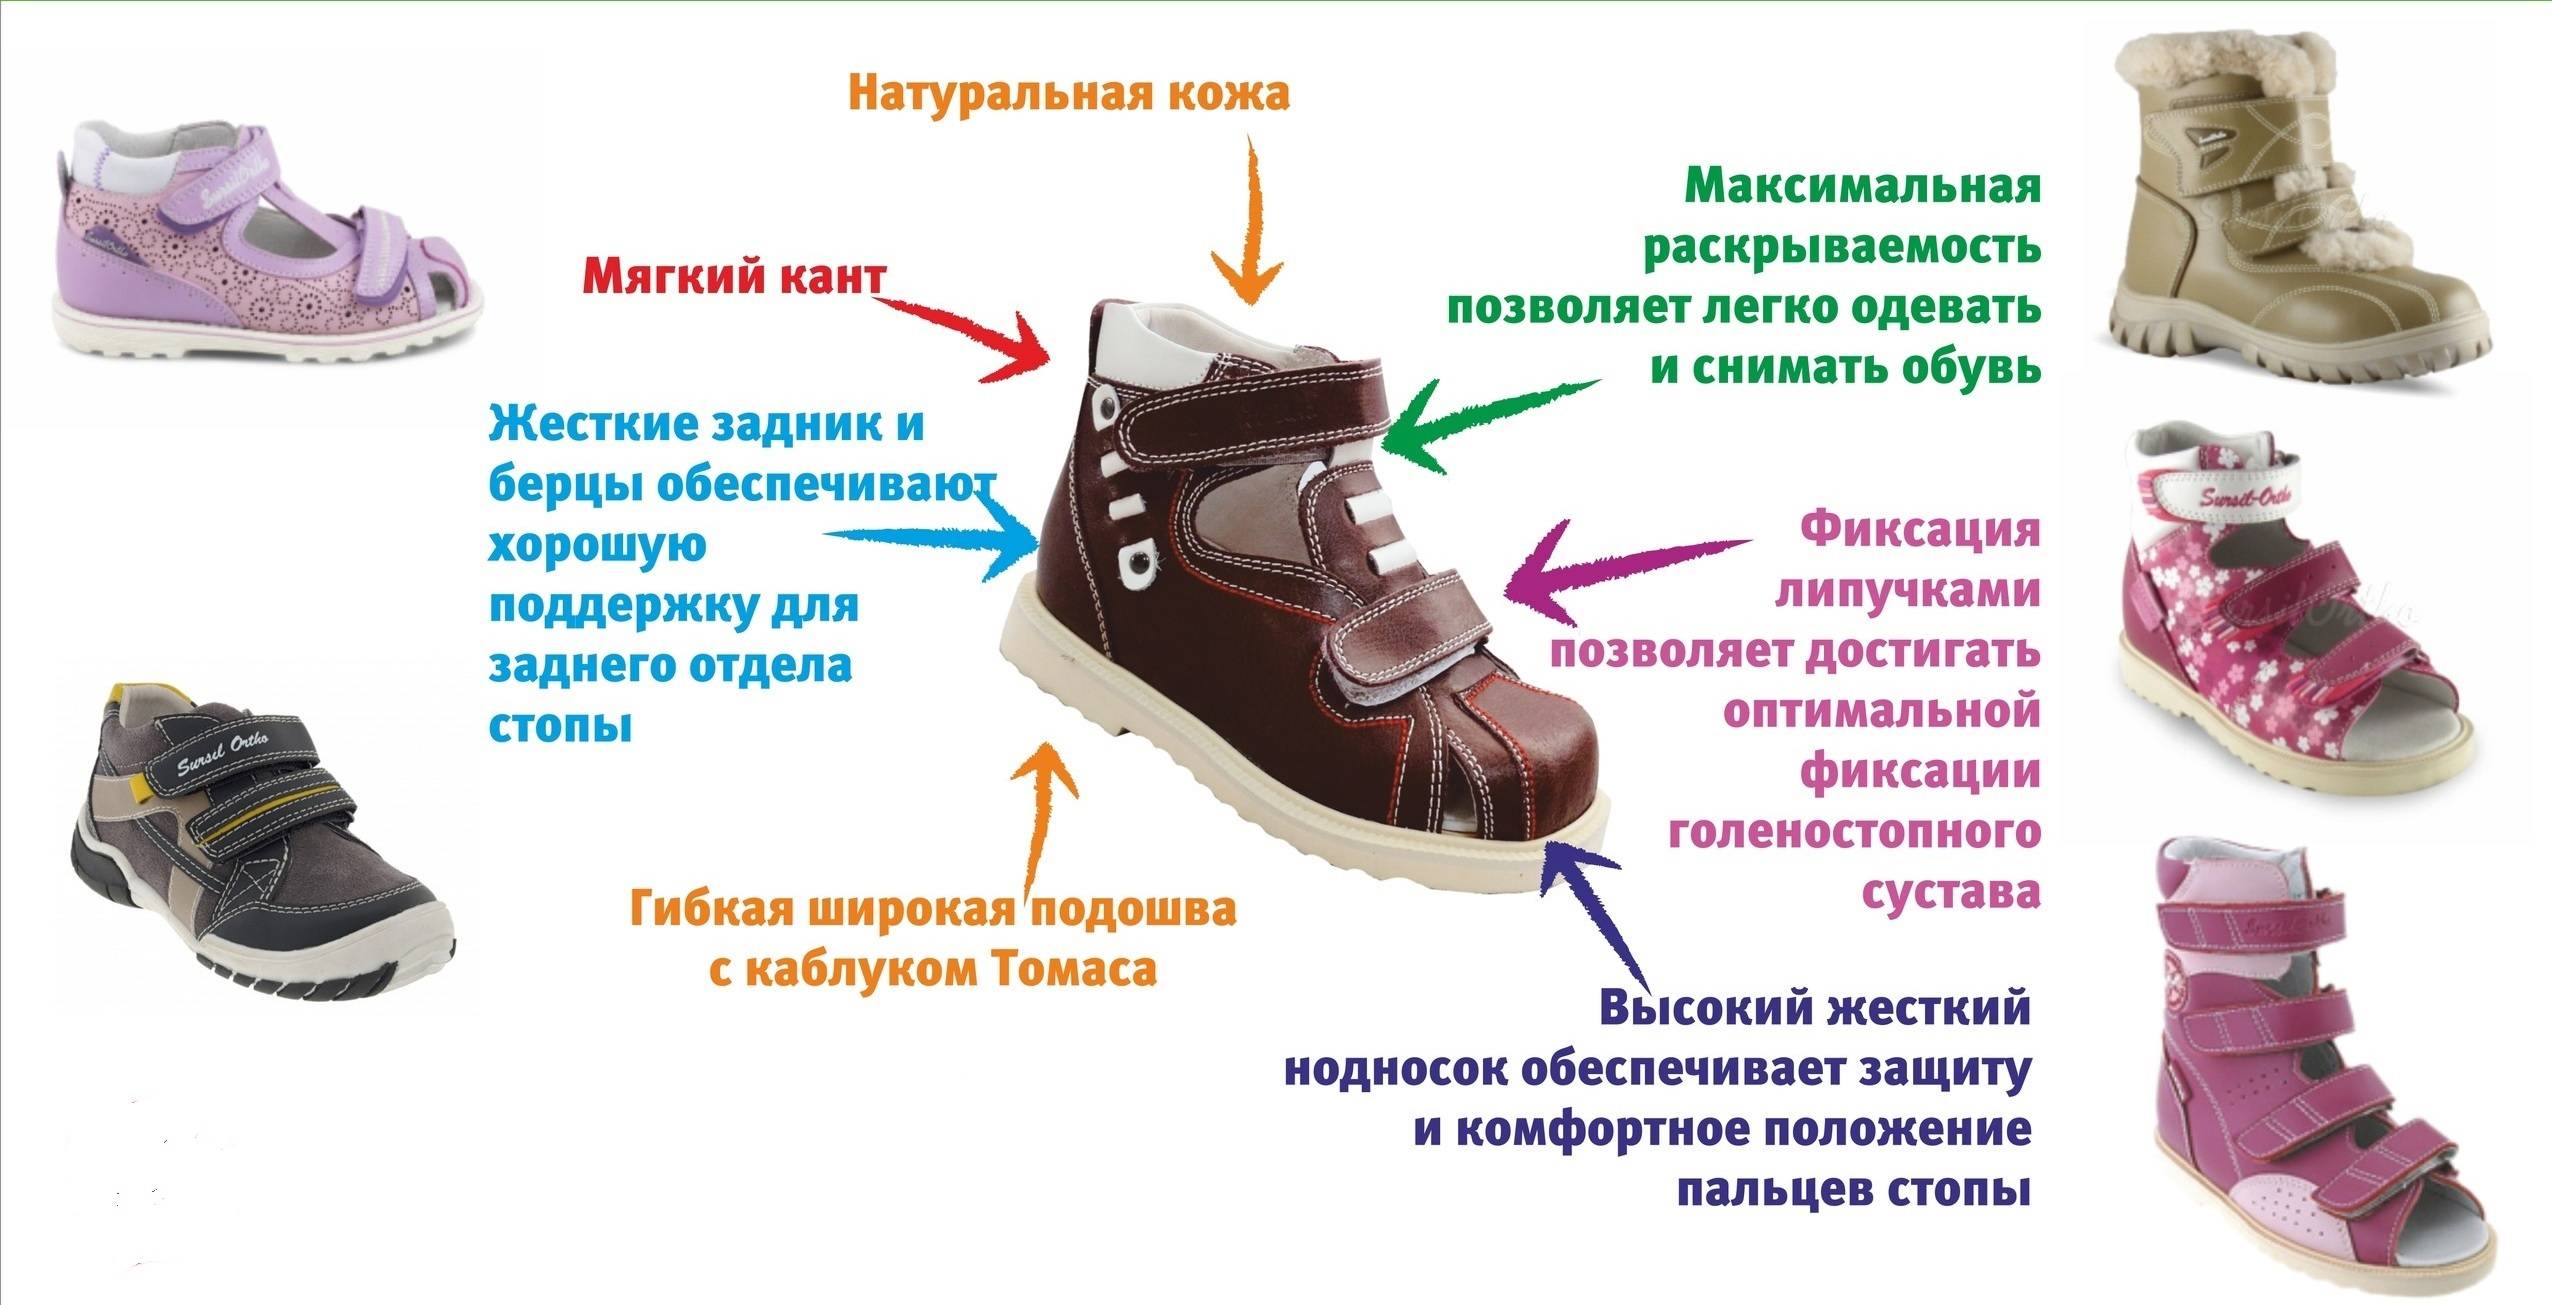 Правильная обувь